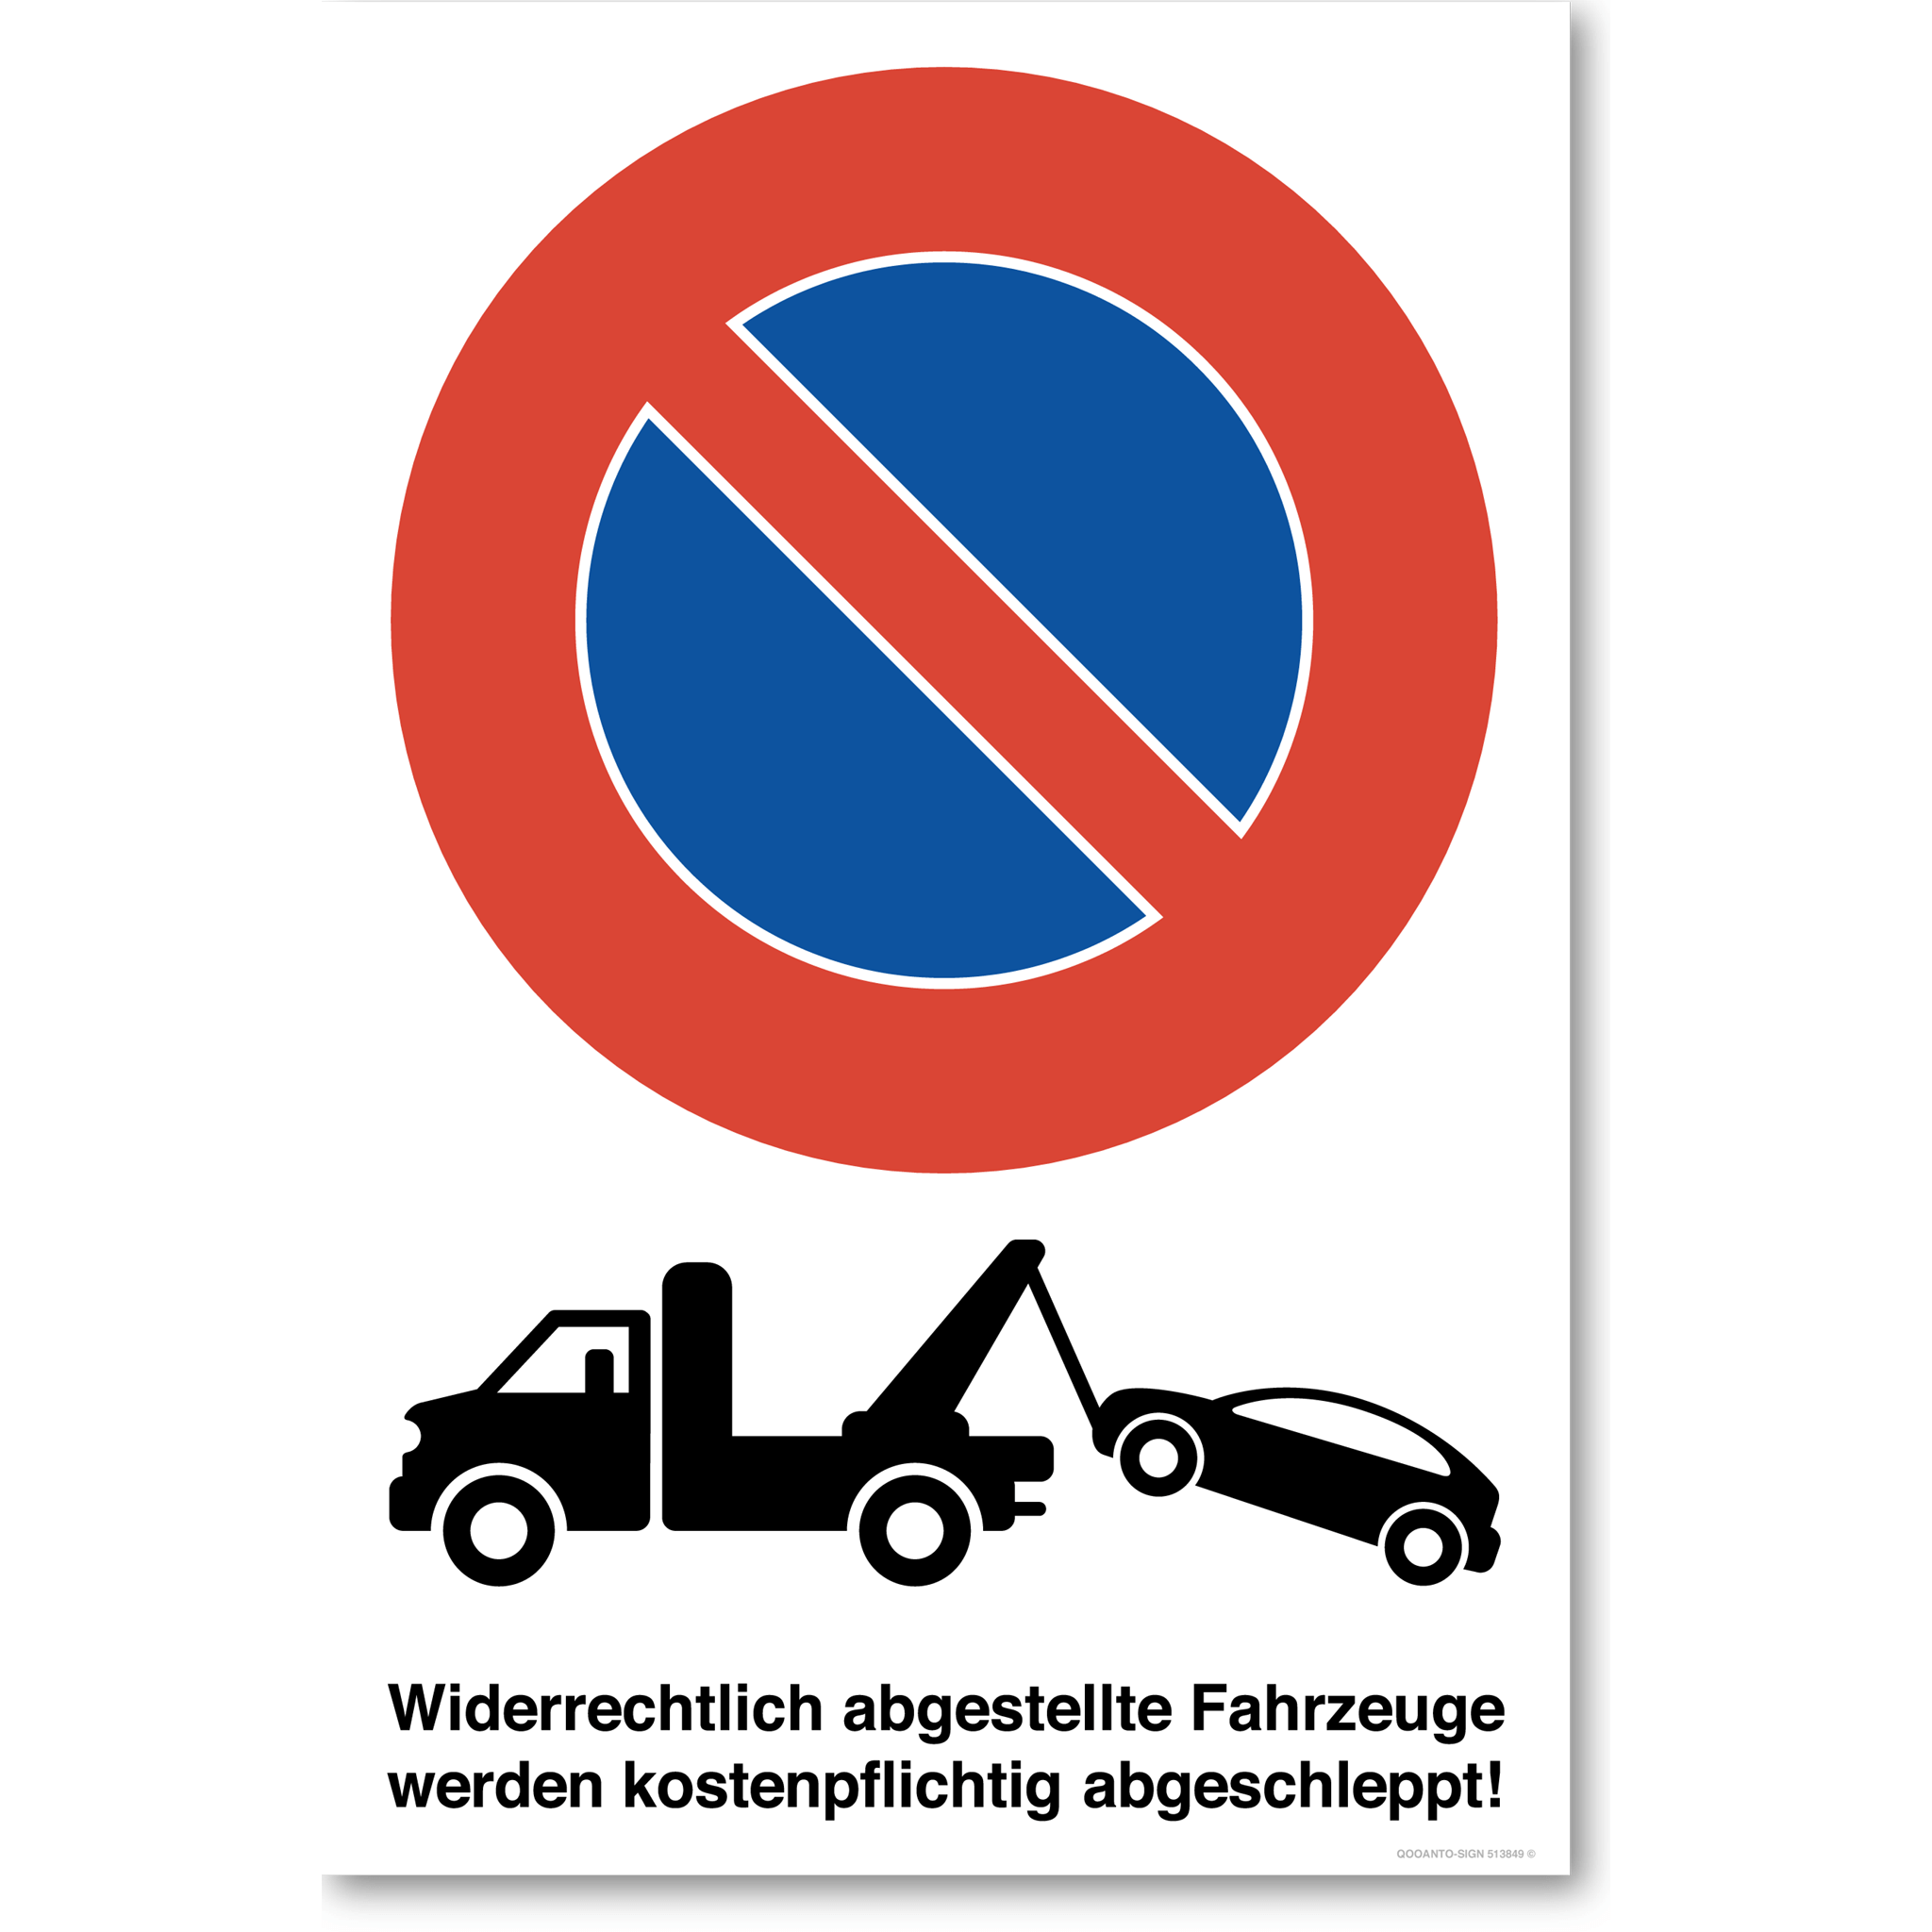 Abschleppwagen - Widerrechtlich abgestellte Fahrzeuge werden kostenpflichtig abgeschleppt - Parkieren verboten - Parkverbotsschild hochformat